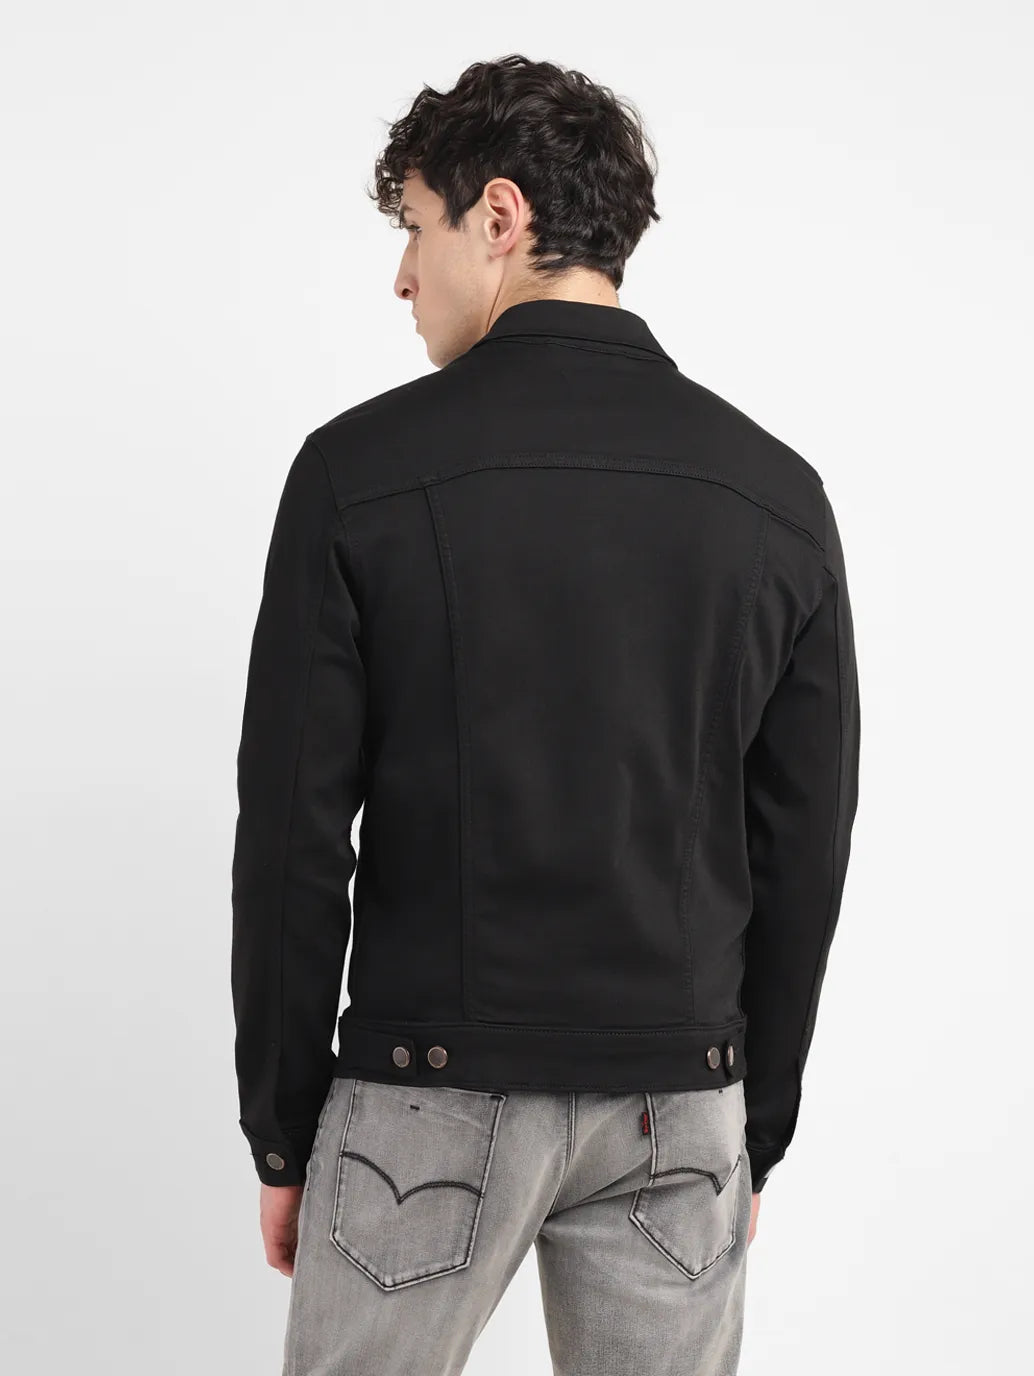 Men's Solid Black Spread Collar Jacket